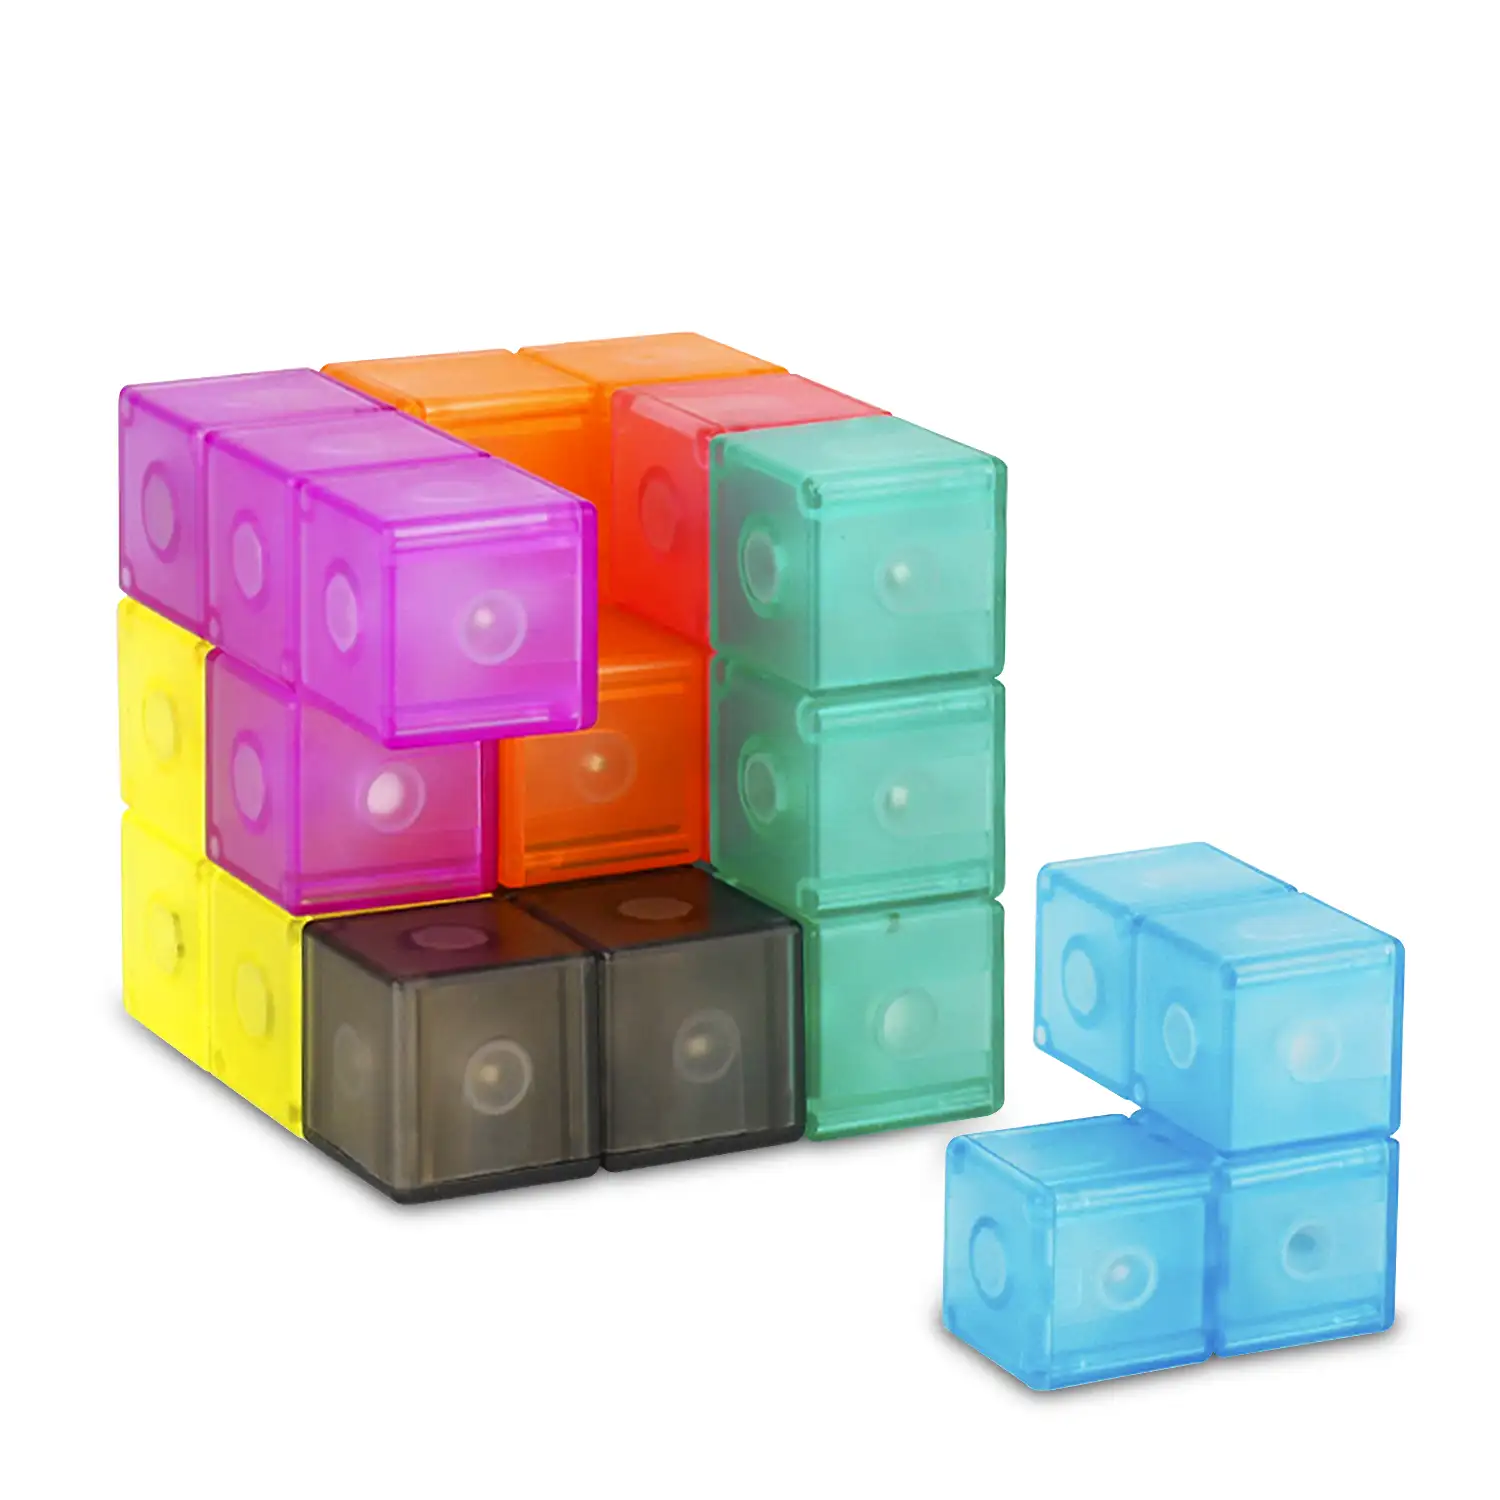 Cubo Magnético 3D Twist. Puzzle en 3 dimensiones, desafios con niveles de dificultad. 7 piezas